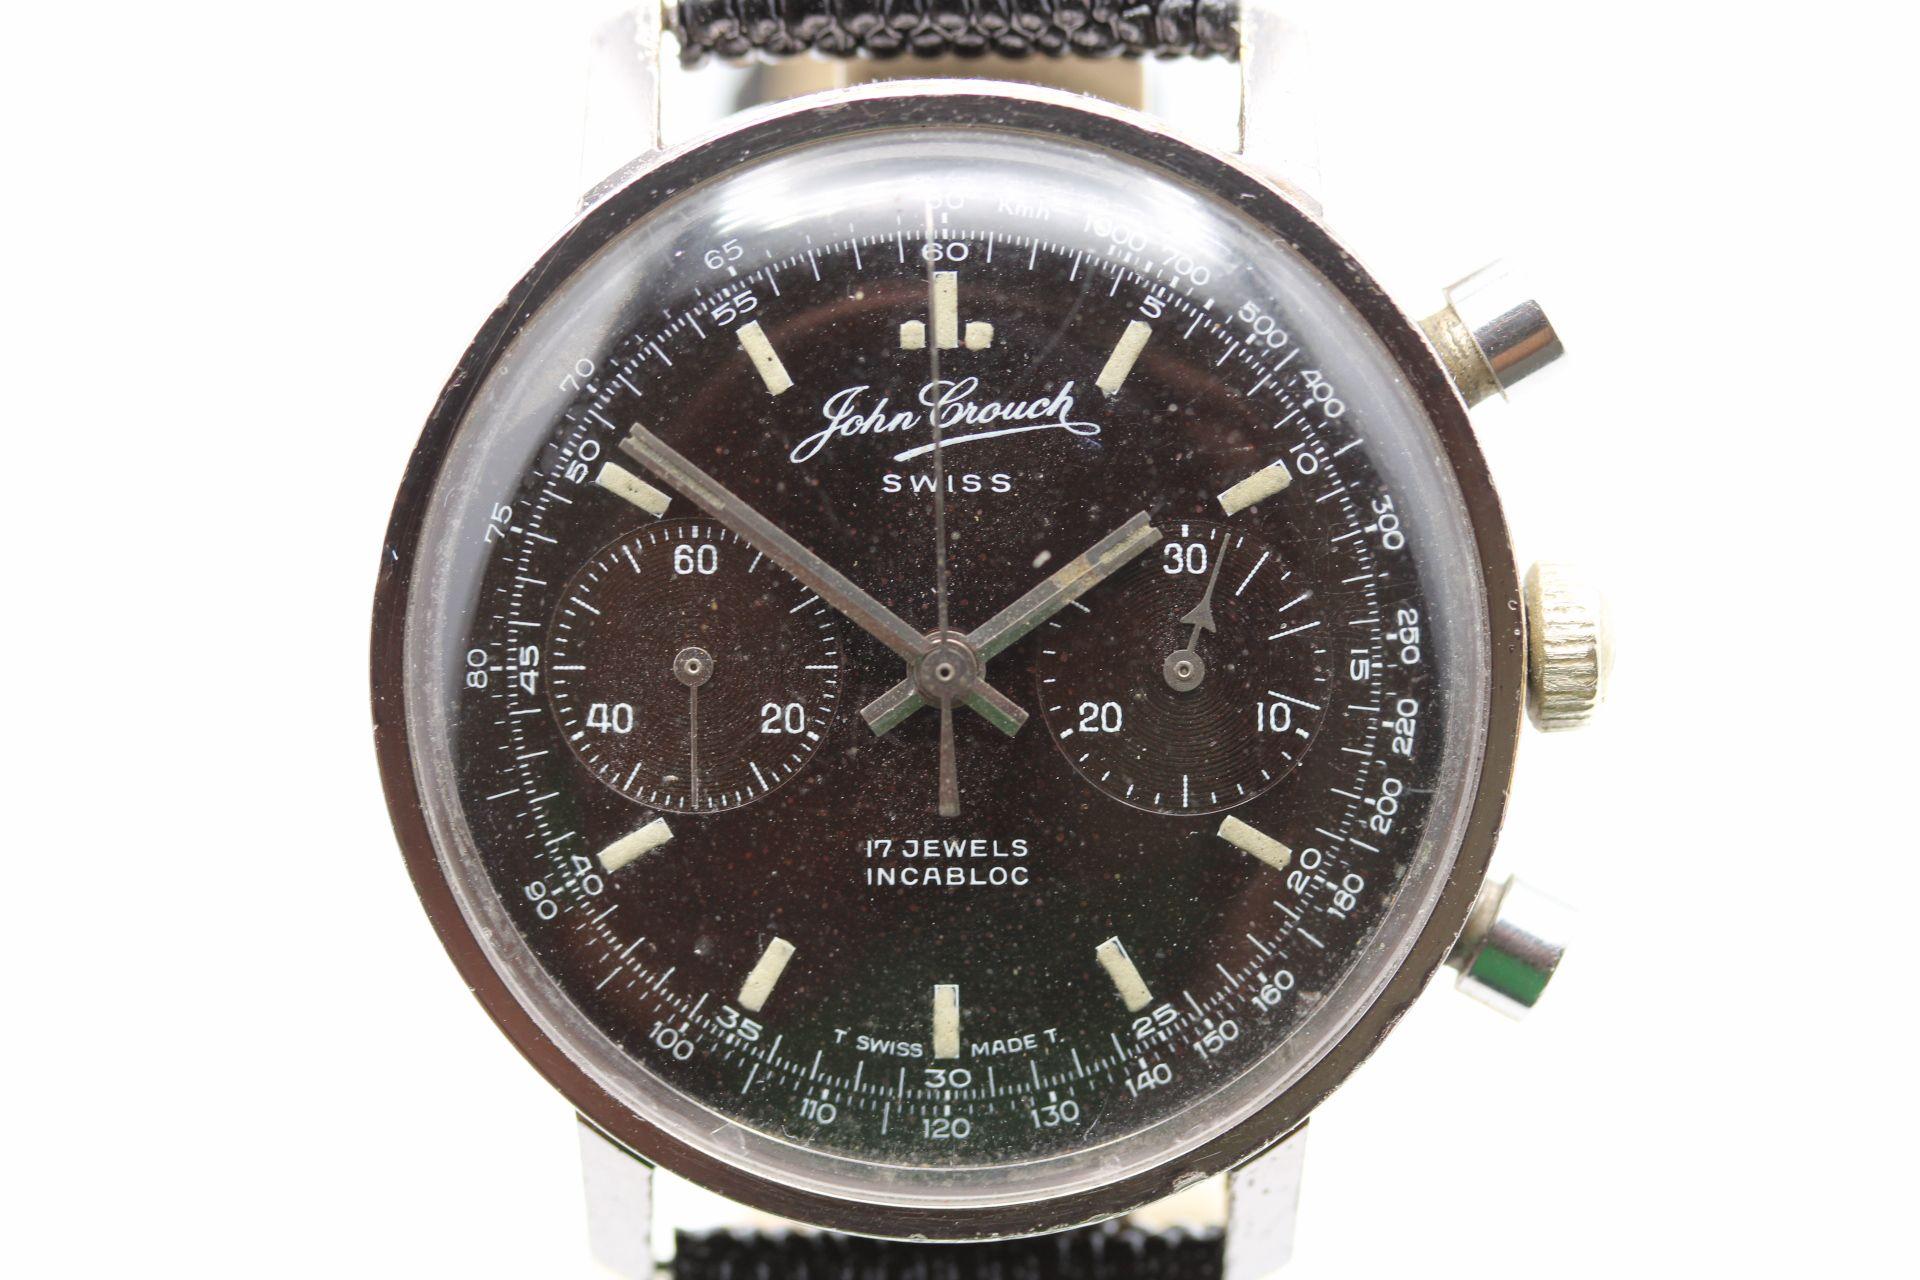 On ne sait pas grand-chose de John Crouch, une boutique de fabrication de montres suisses, peut-être l'une des seules annoncées, mais cela n'enlève rien à la qualité de la montre. Le mouvement à remontage manuel est alimenté par un mouvement 248